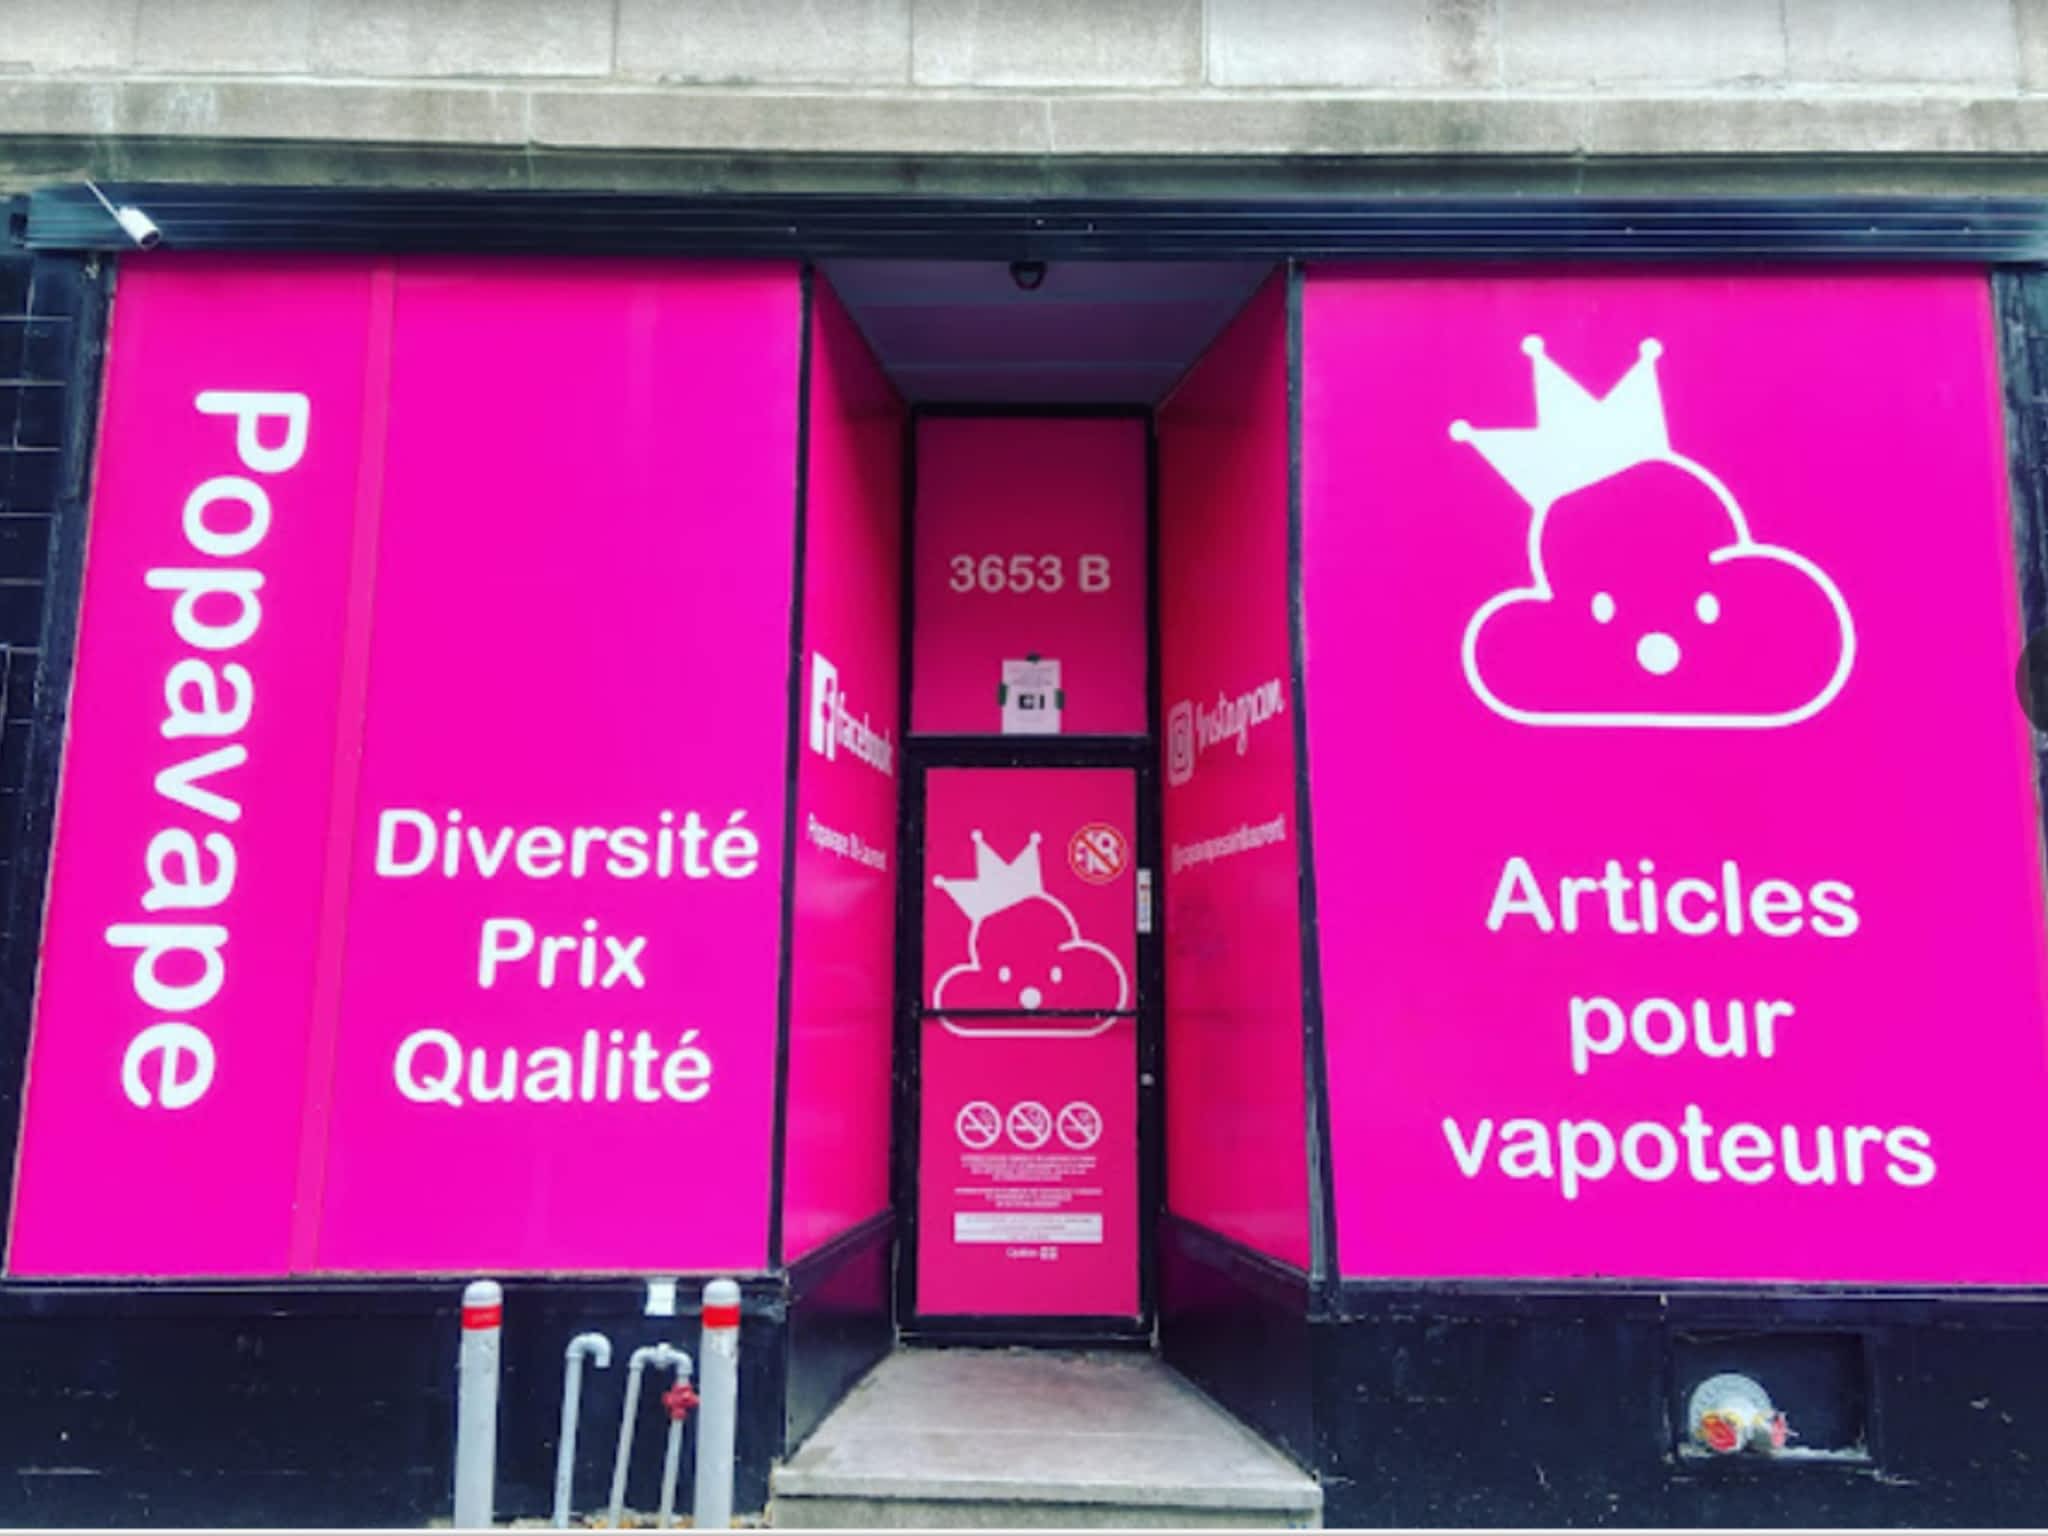 photo Popavape St-Laurent Montreal | Articles pour vapoteurs | Vape Shop